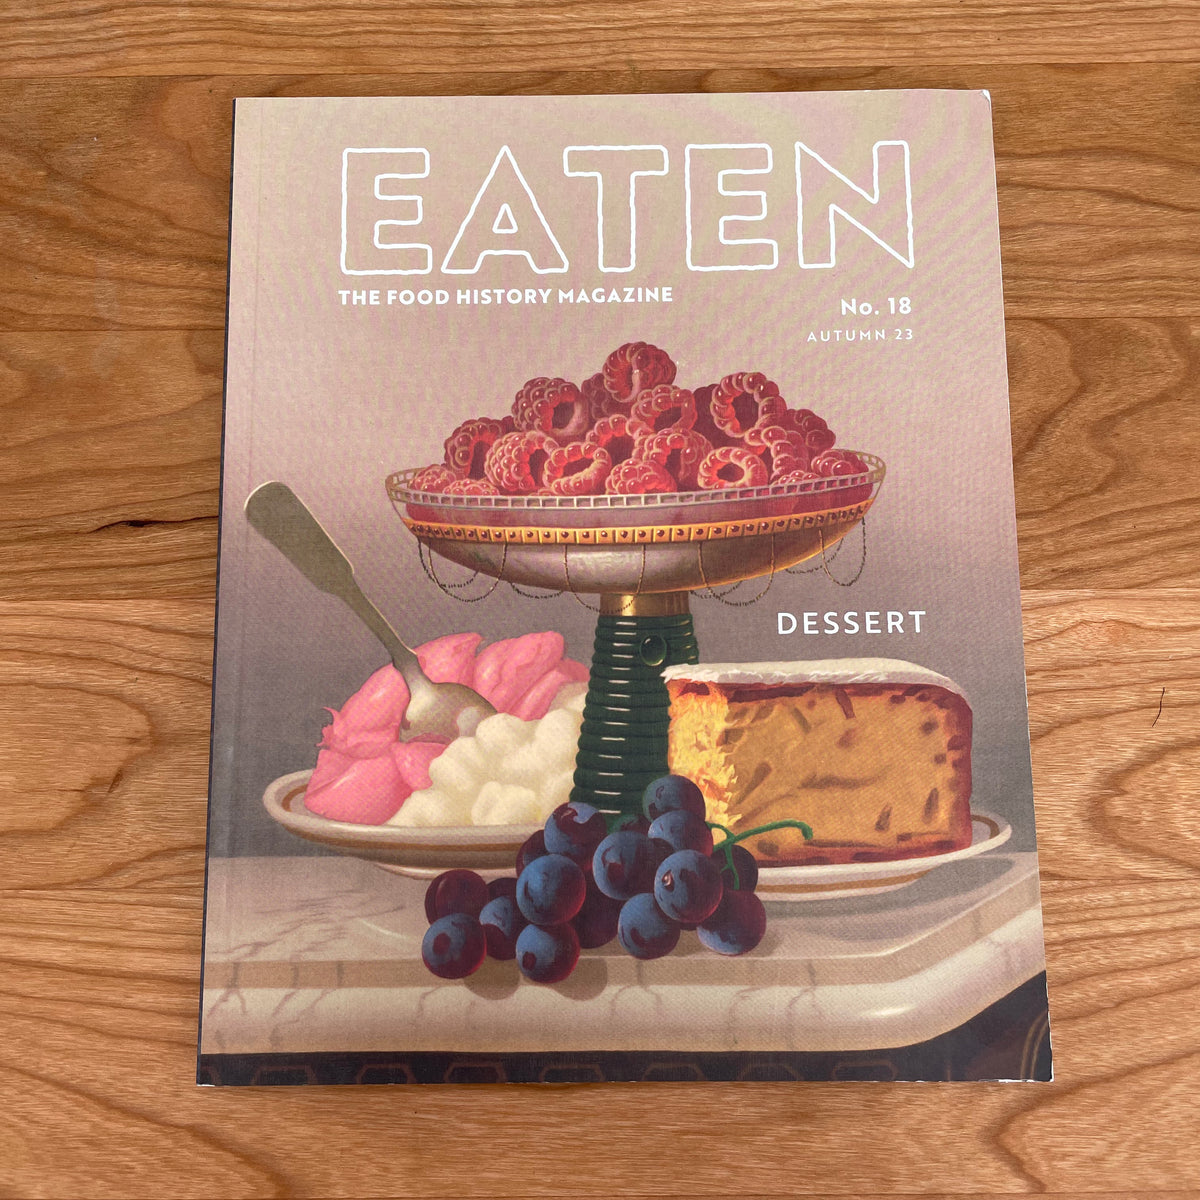 Eaten Magazine No. 18 - Dessert